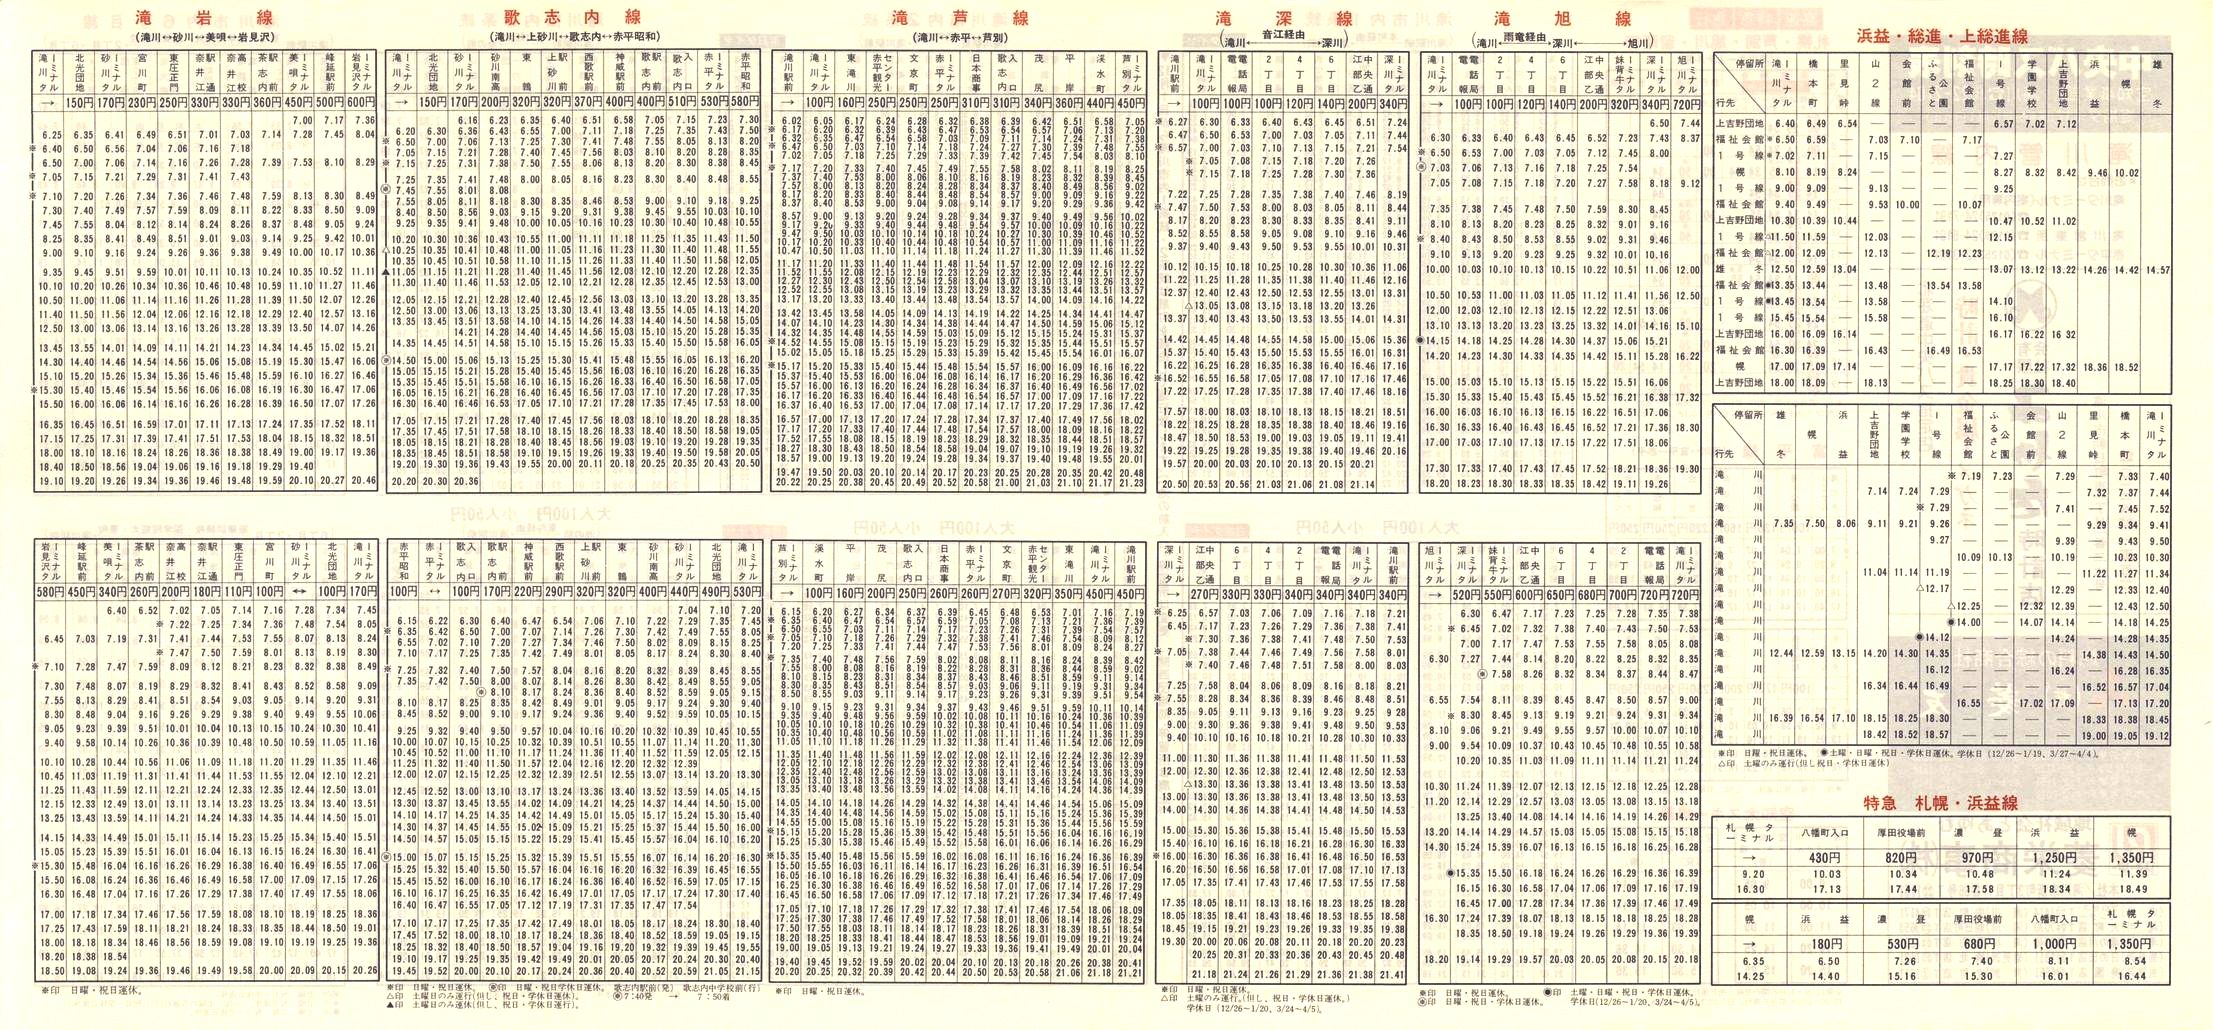 1984-12-01改正_北海道中央バス(空知)_滝川管内線時刻表裏面